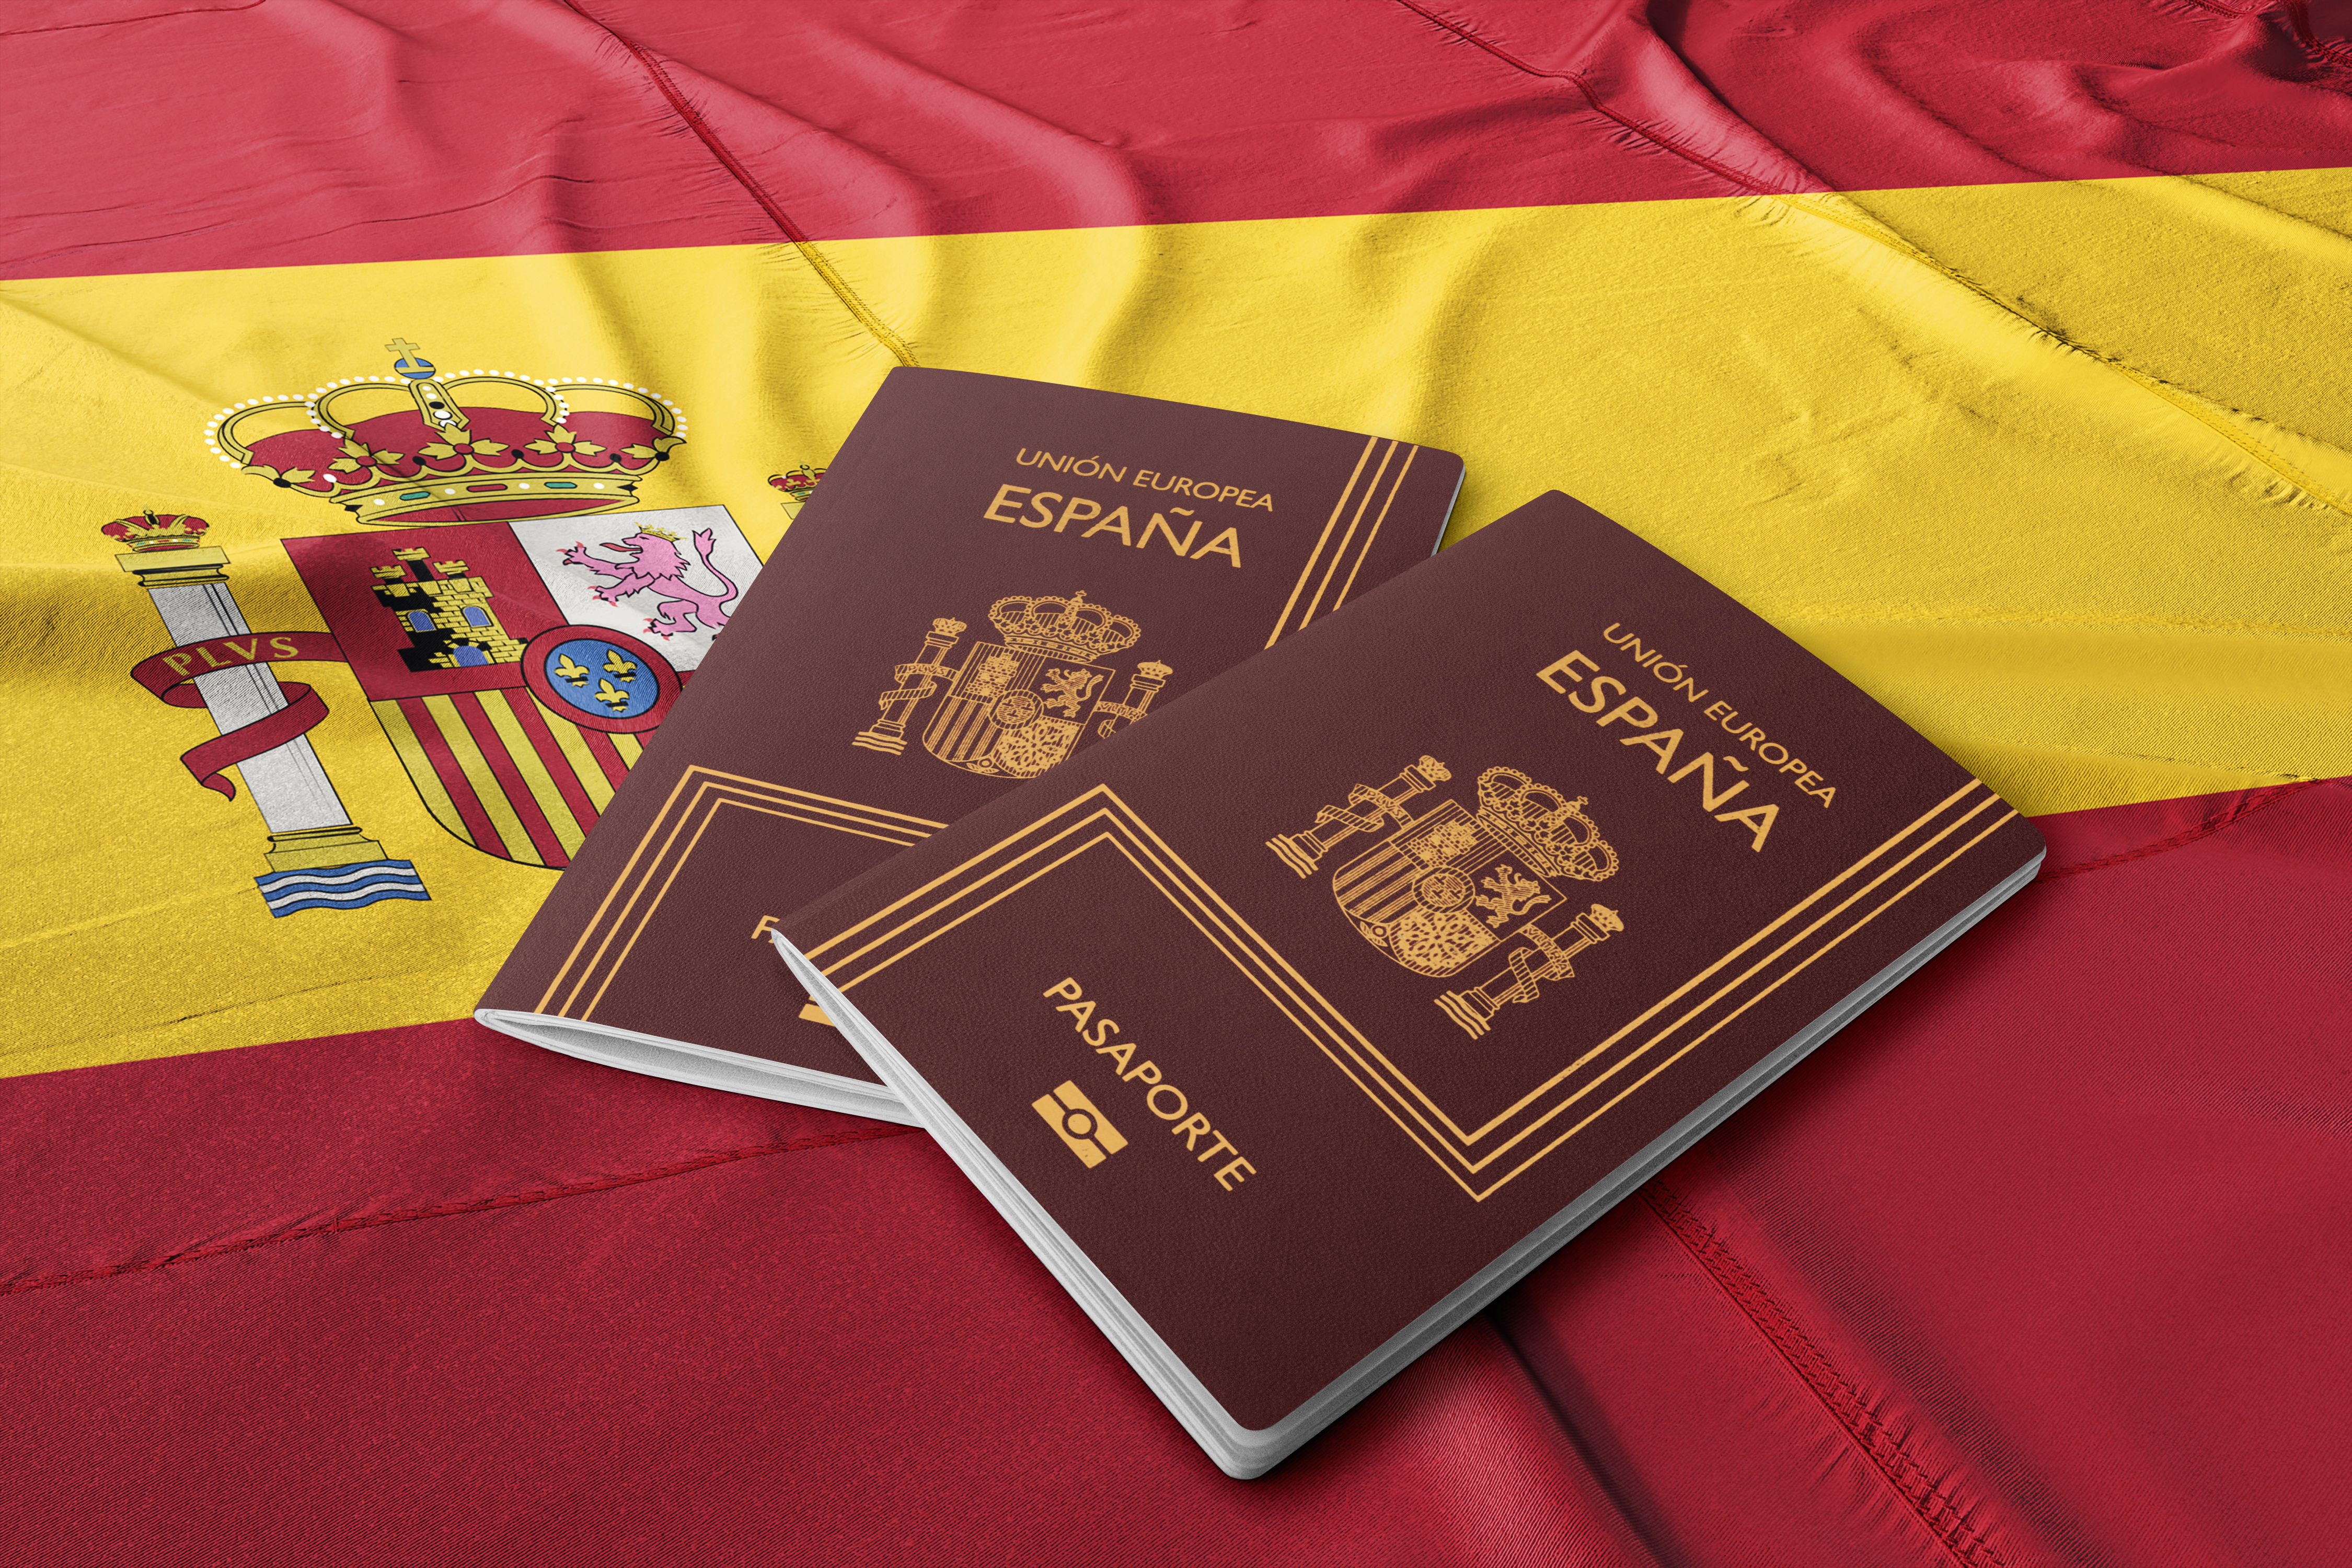 испанское гражданство